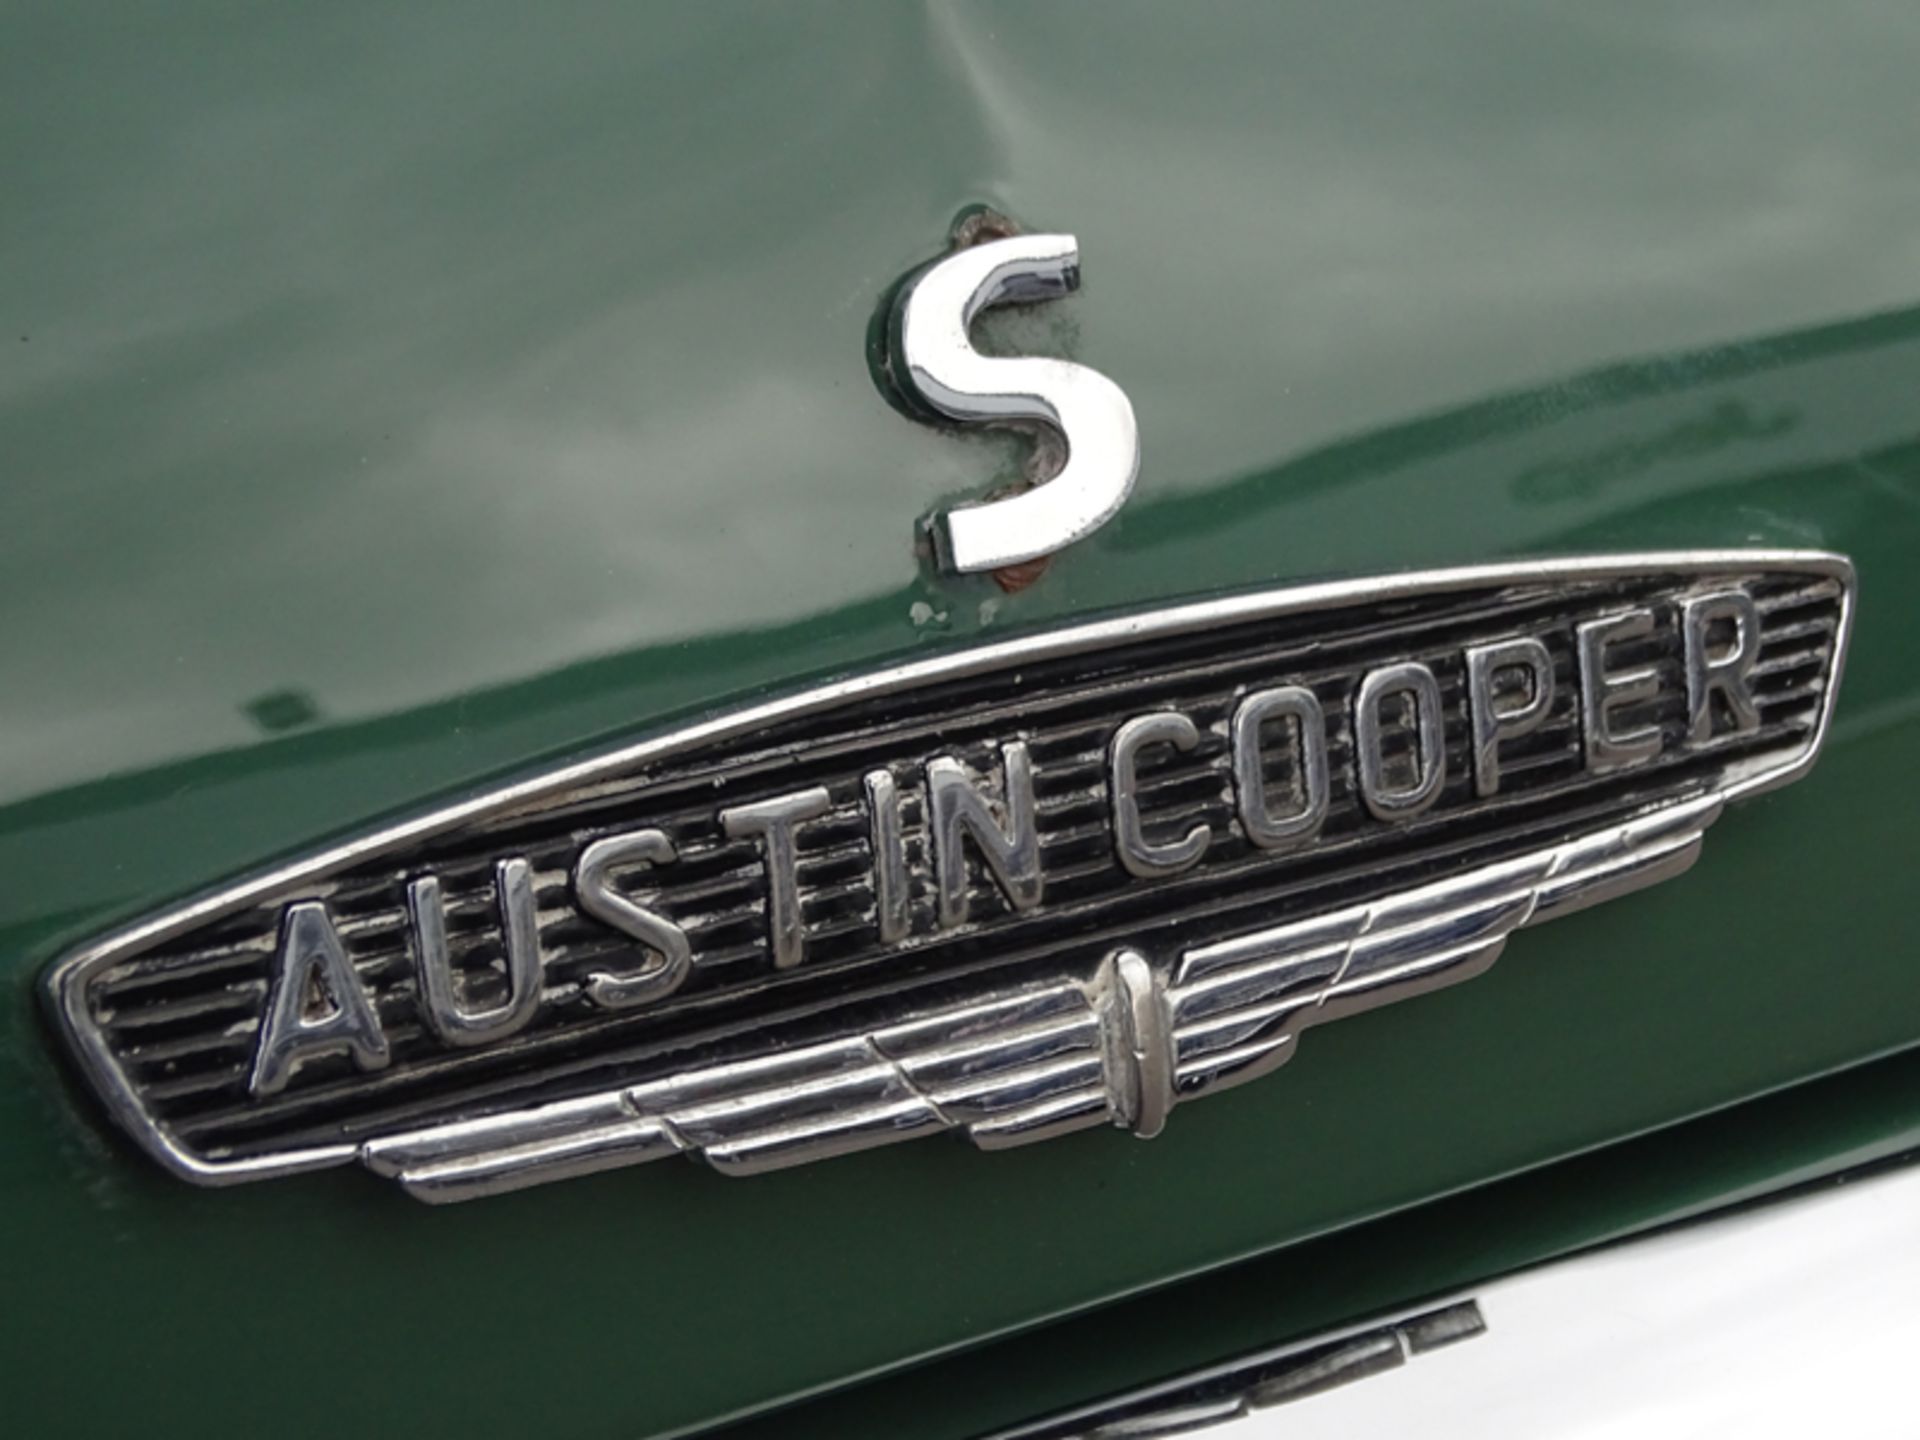 1966 Austin Mini Cooper S - Image 9 of 9